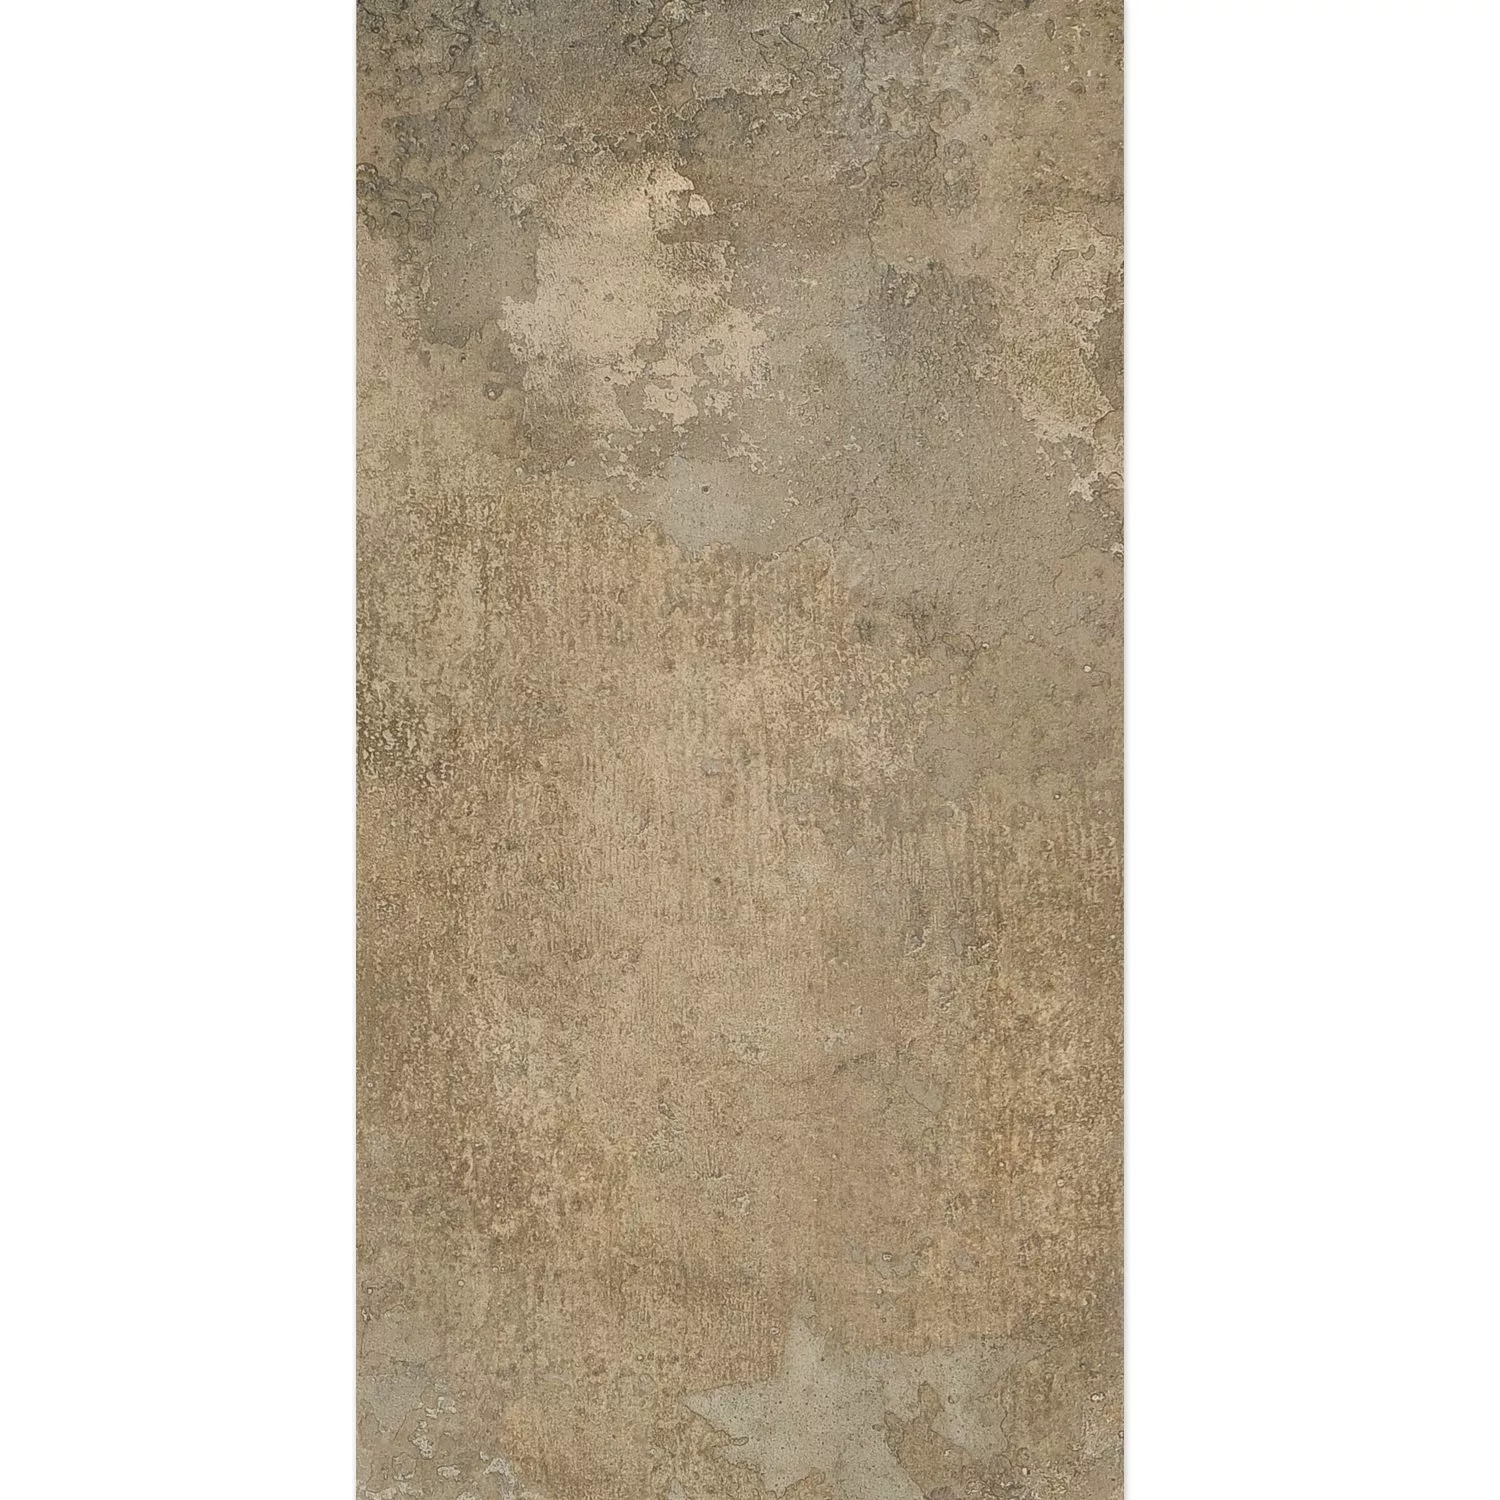 Próbka Płytki Podłogowe Haarlem Brązowy 45x90cm